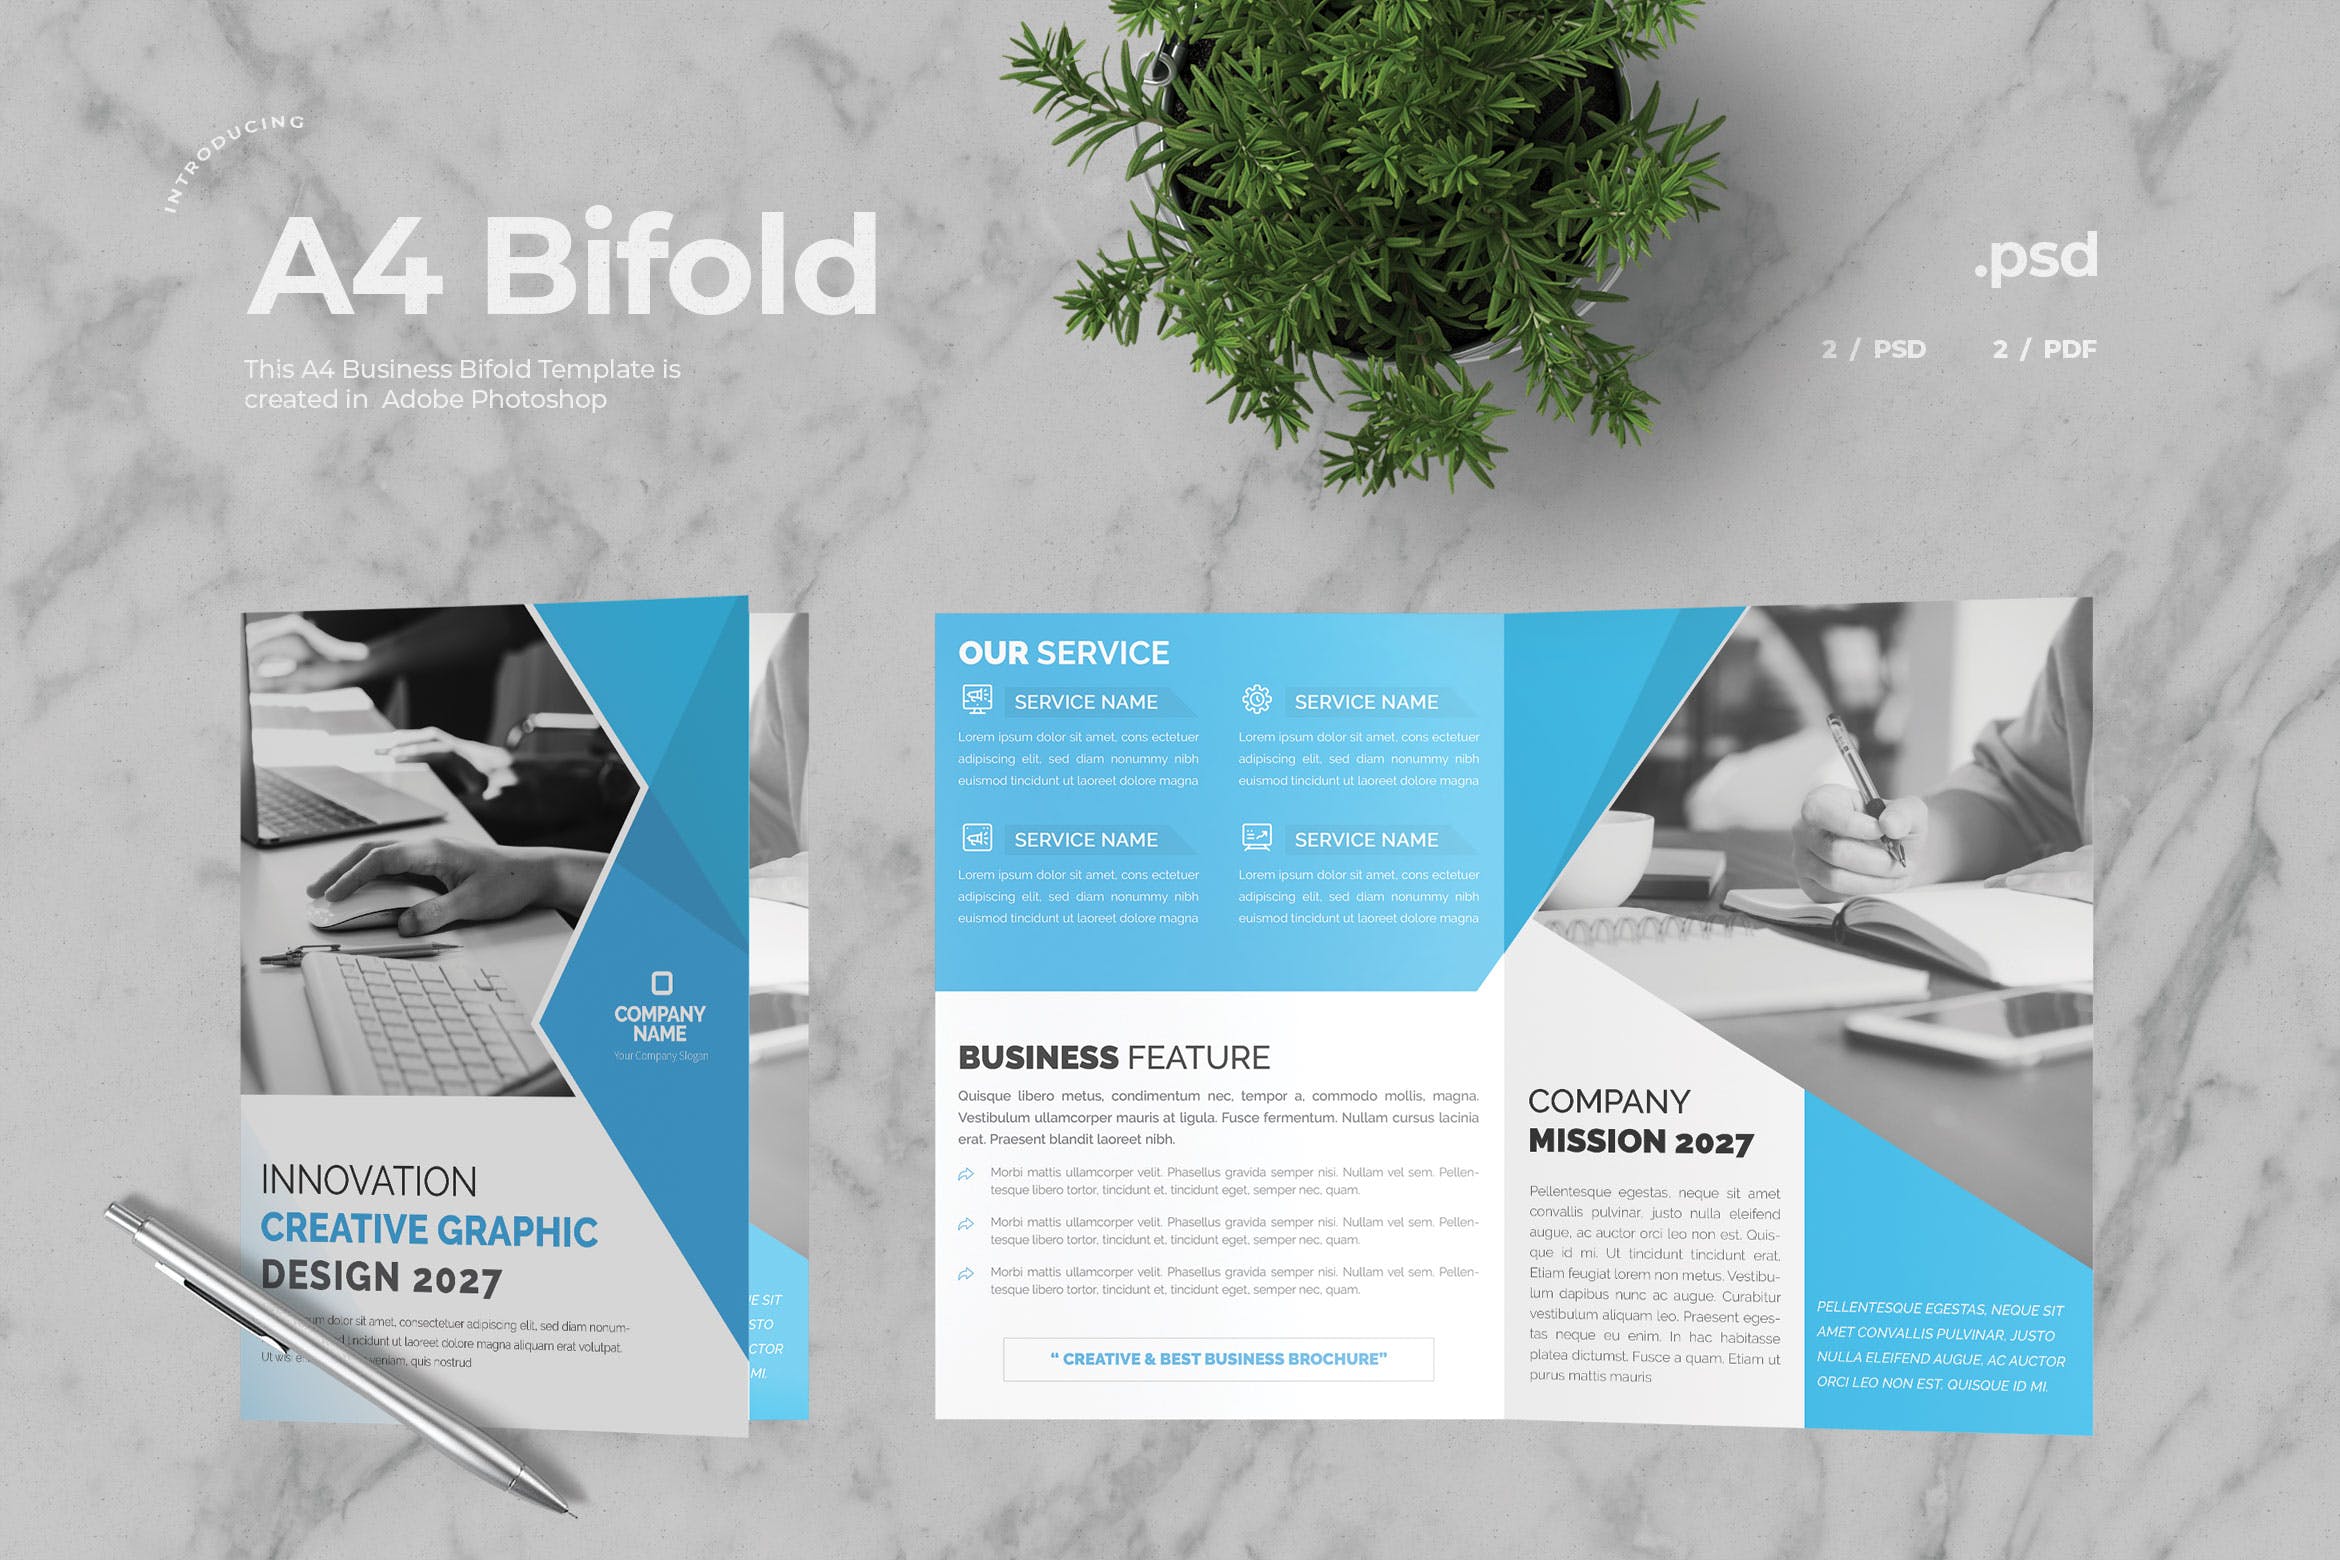 创意设计外包公司简介对折页宣传册模板v5 Business Bifold Brochure插图